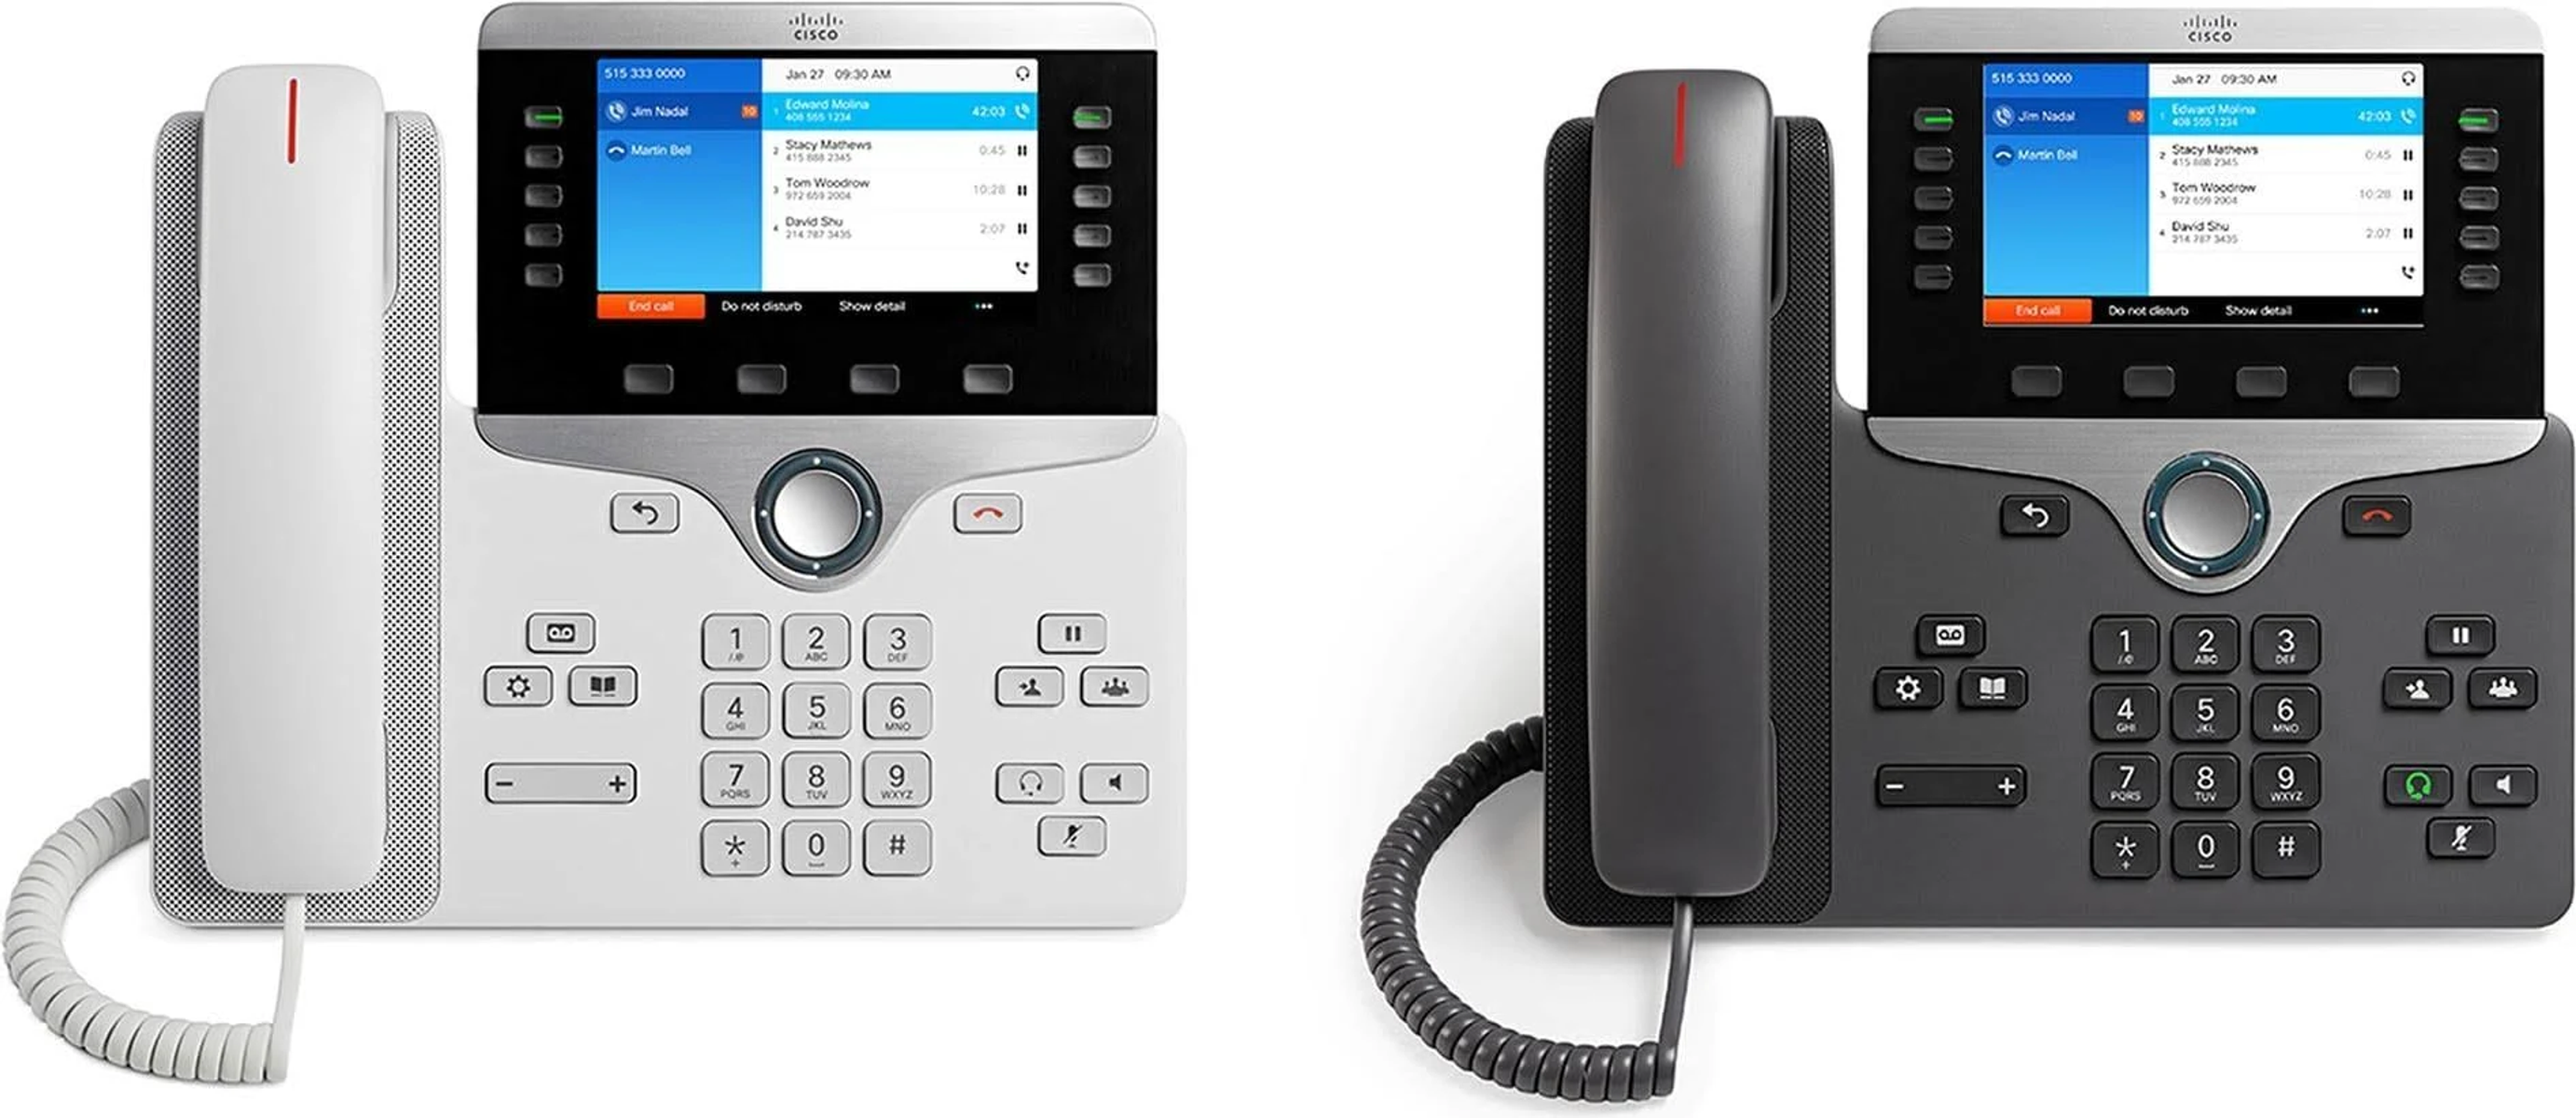 CP-8841-K9 Telefon VoIP- CISCO